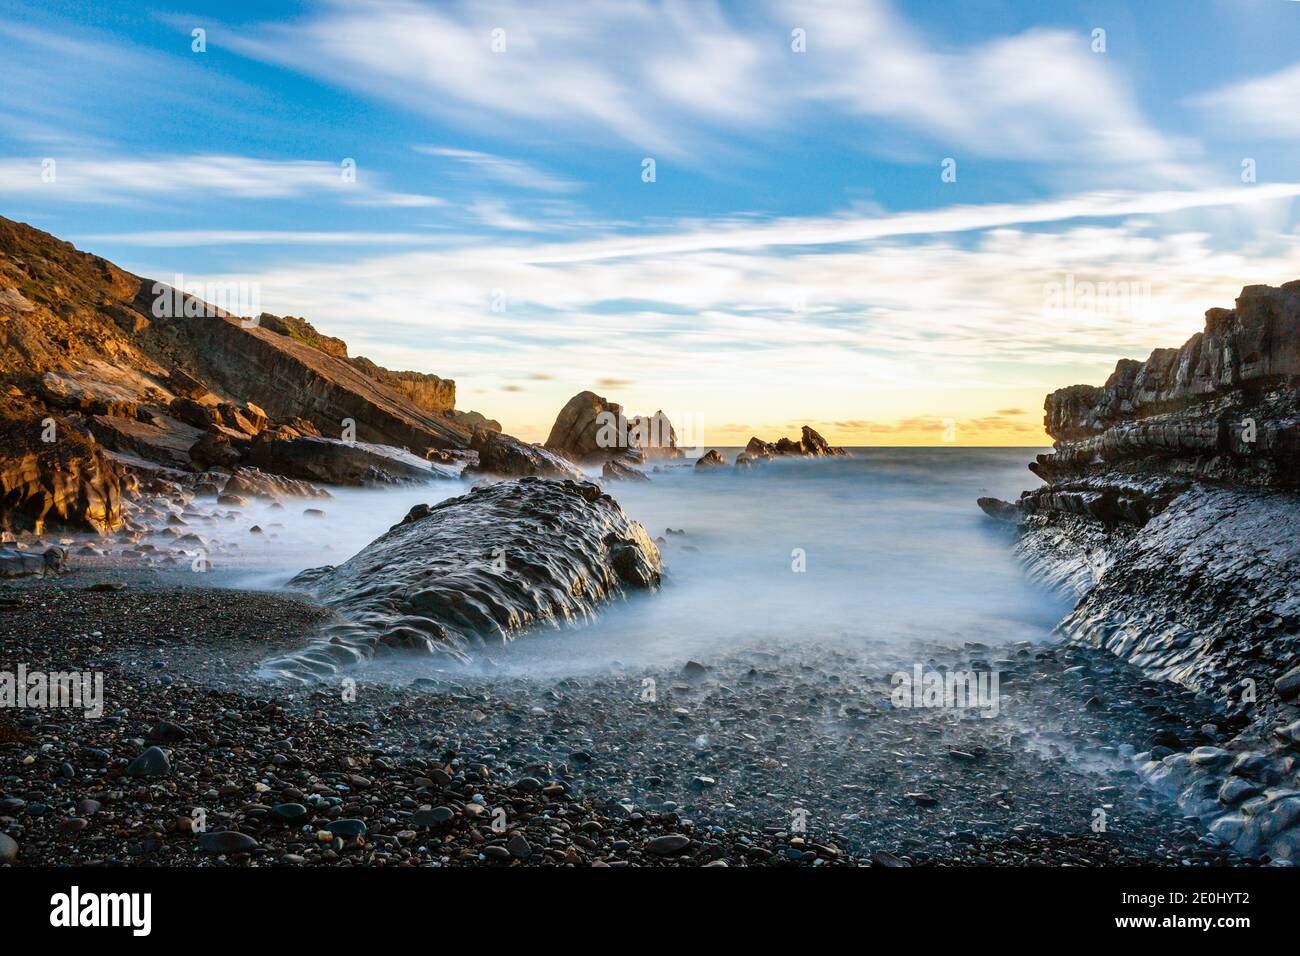 Coucher de soleil sur la côte rocheuse à Bude dans le nord de Cornwall, Angleterre, Royaume-Uni Banque D'Images